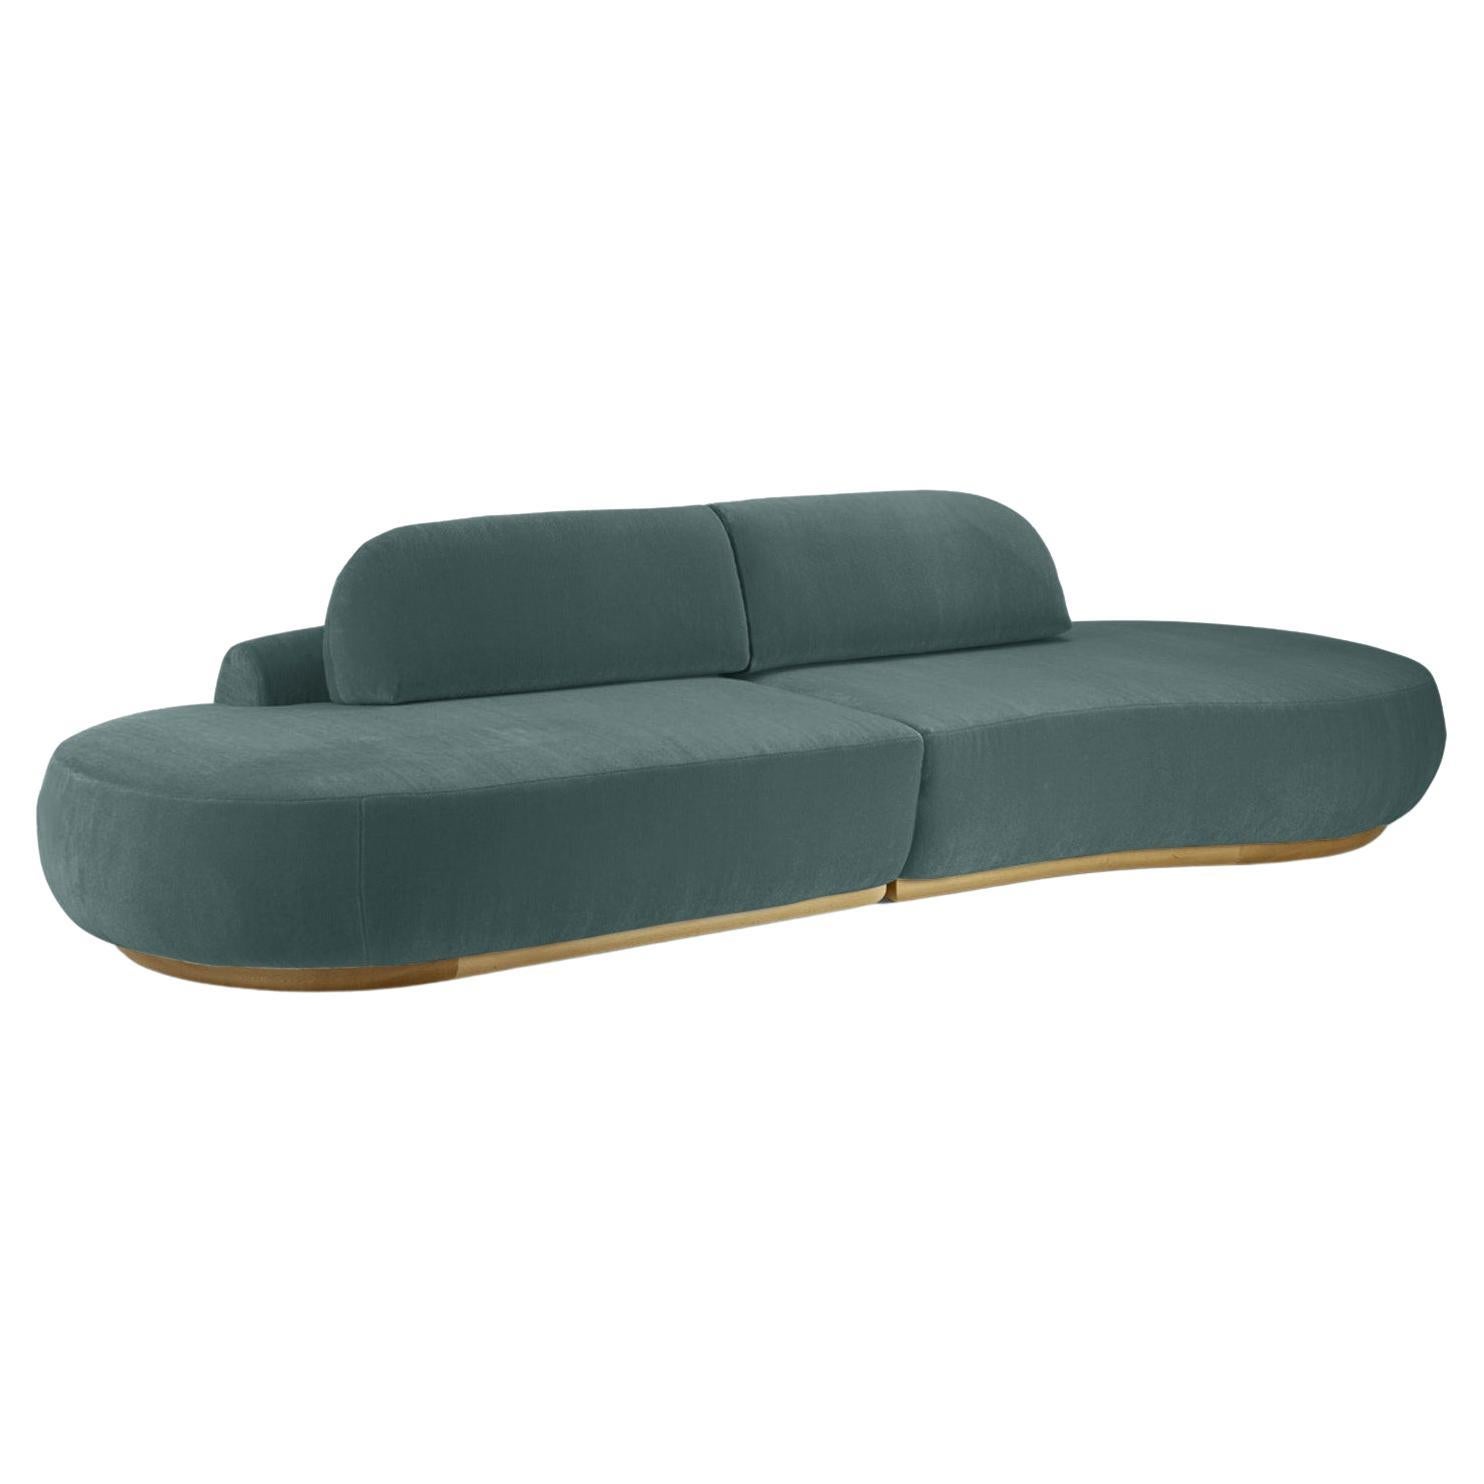 Naked Curved Sectional Sofa mit geschwungener Sektion, 2 Stück mit Eiche Natur und Teal